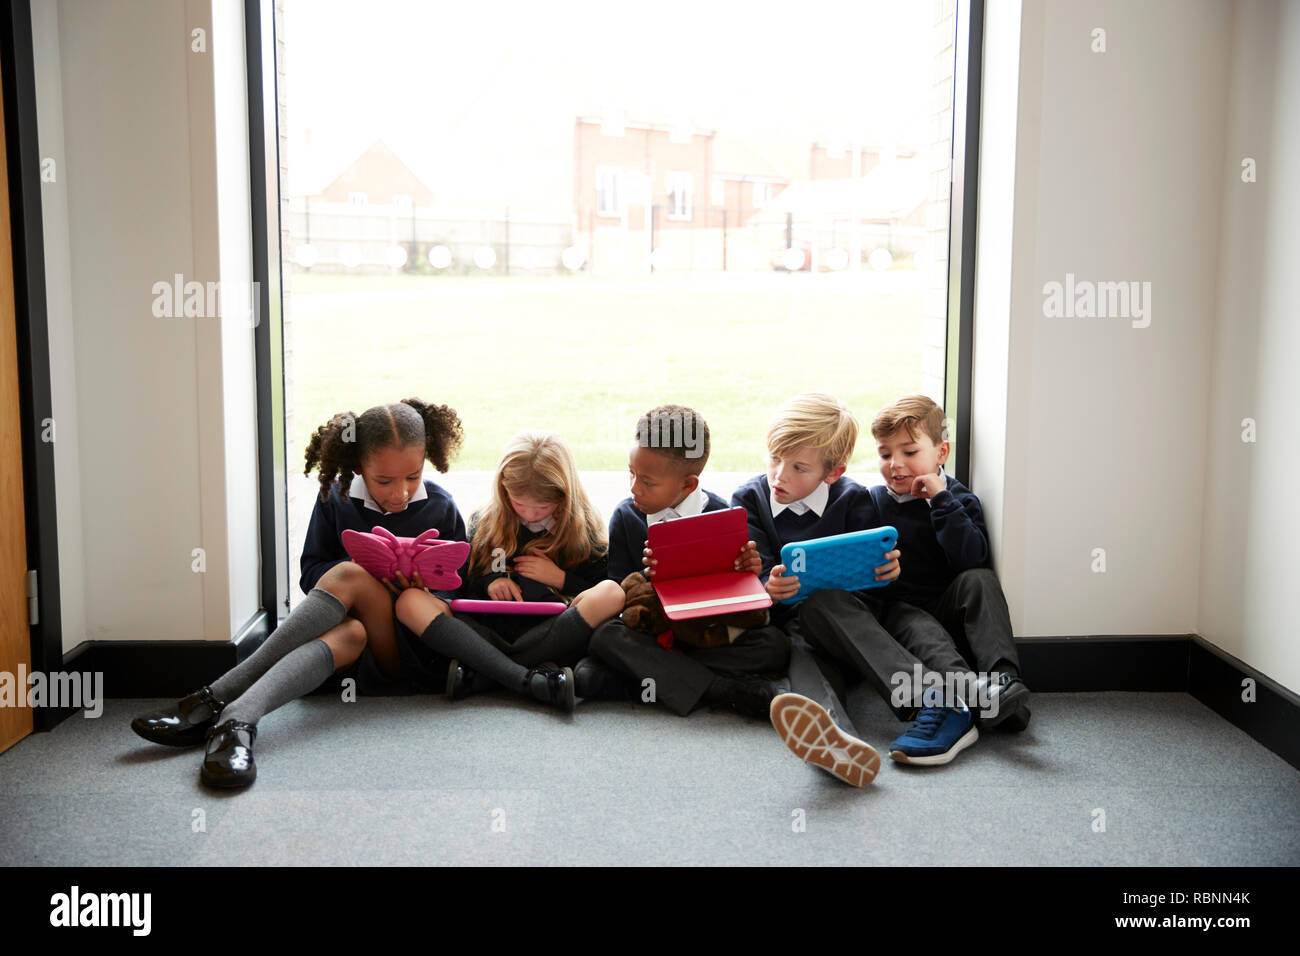 Fünf Grundschule Kinder in einer Reihe sitzen auf dem Boden vor einem Fenster in einer Schule Flur am Tablet Computer, Ansicht von vorne suchen, Nahaufnahme Stockfoto